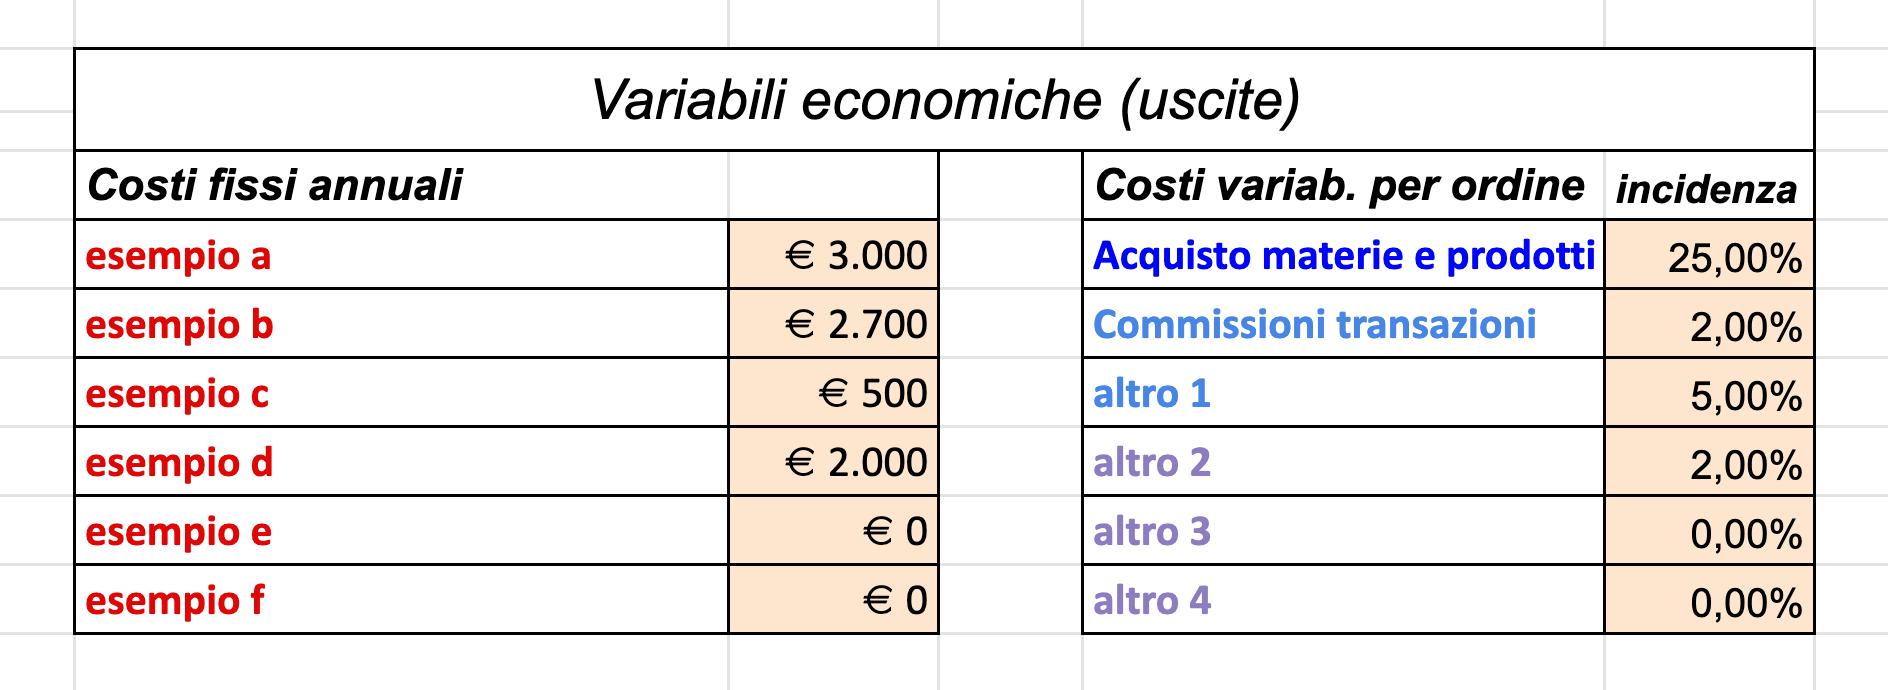 2. modello conto economico - variabile costi fissi e variabili